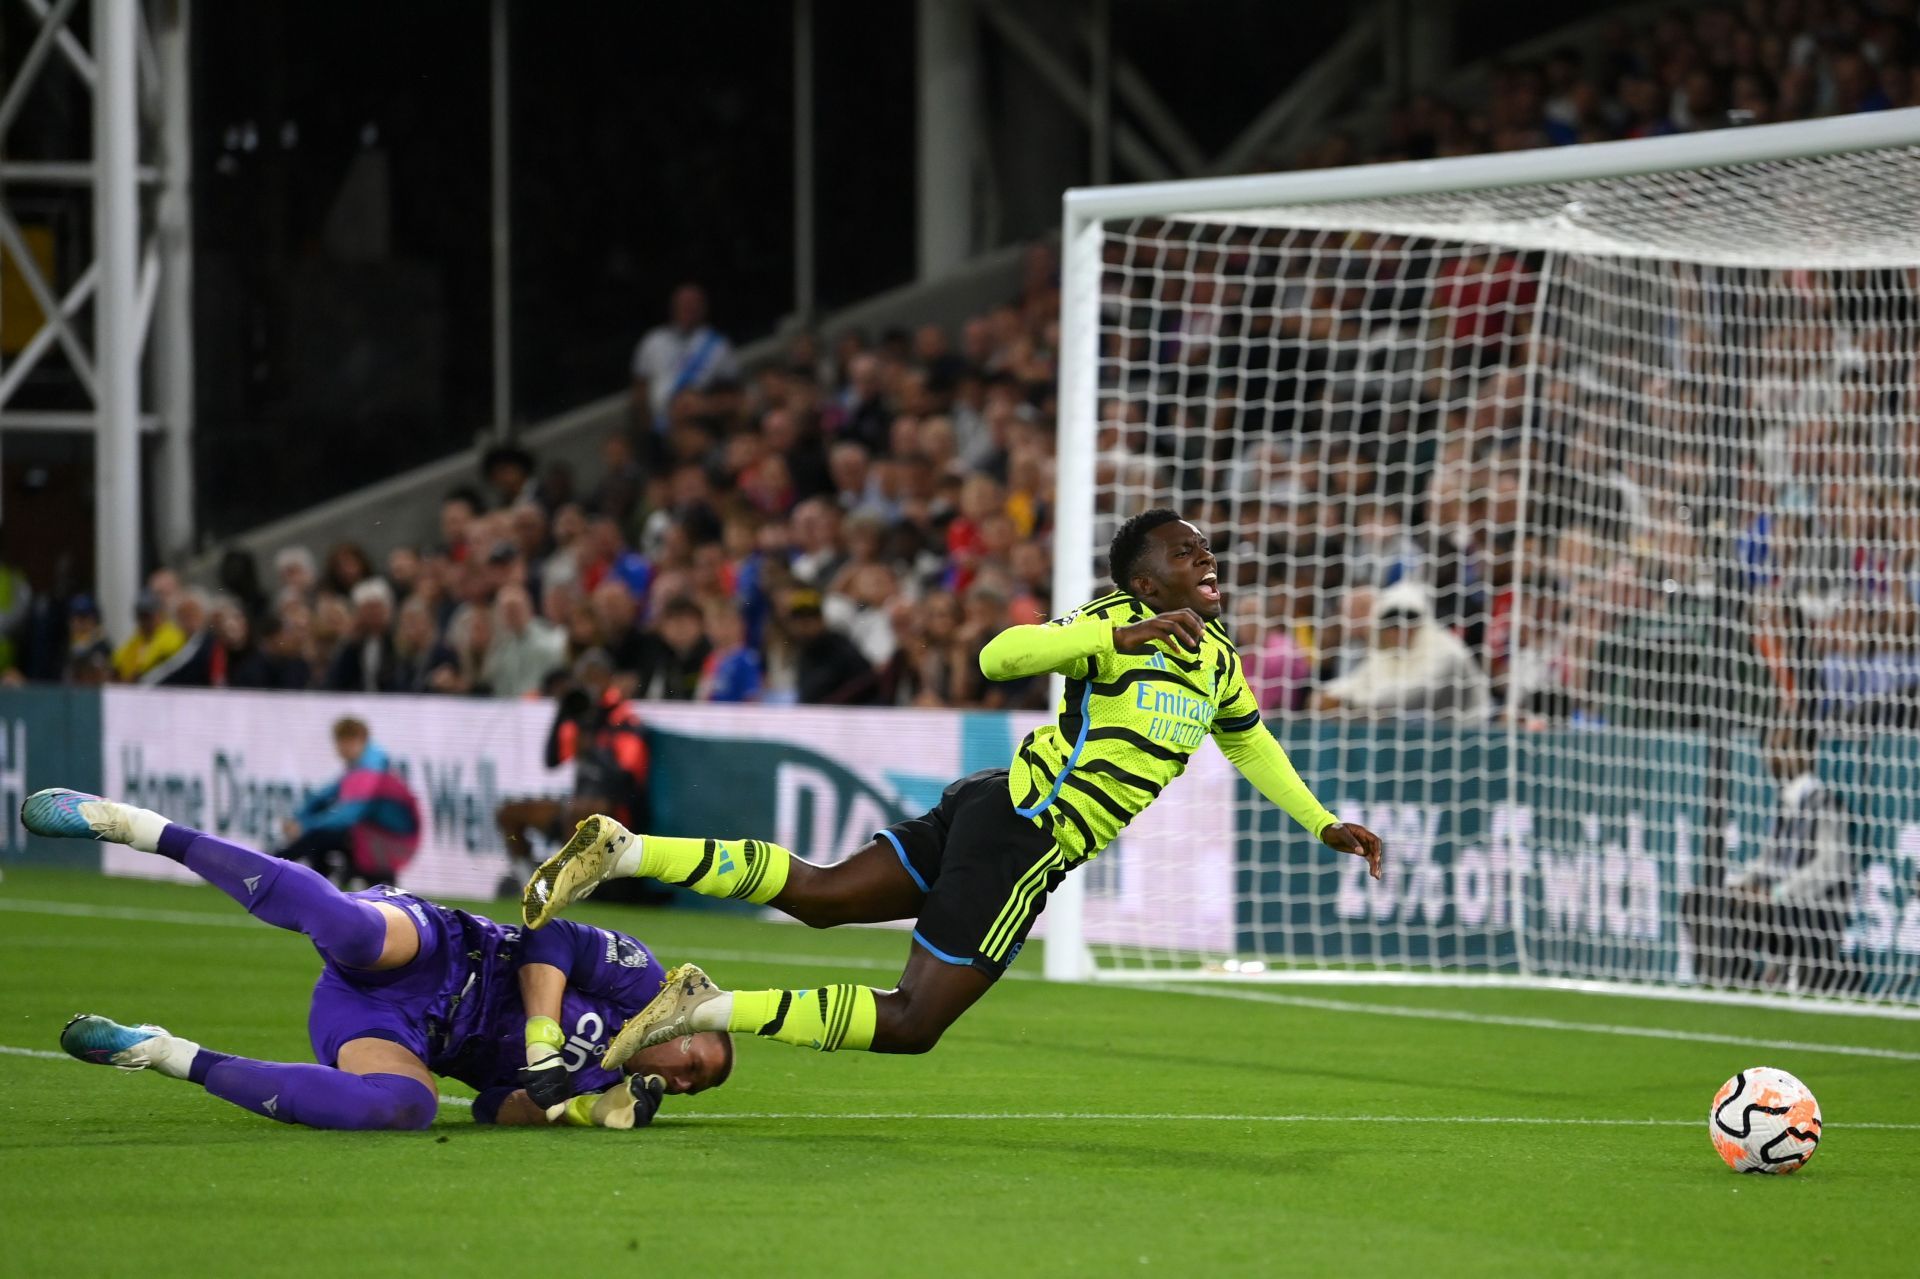 Eddie Nketiah against Crystal Palace (via Getty Images)